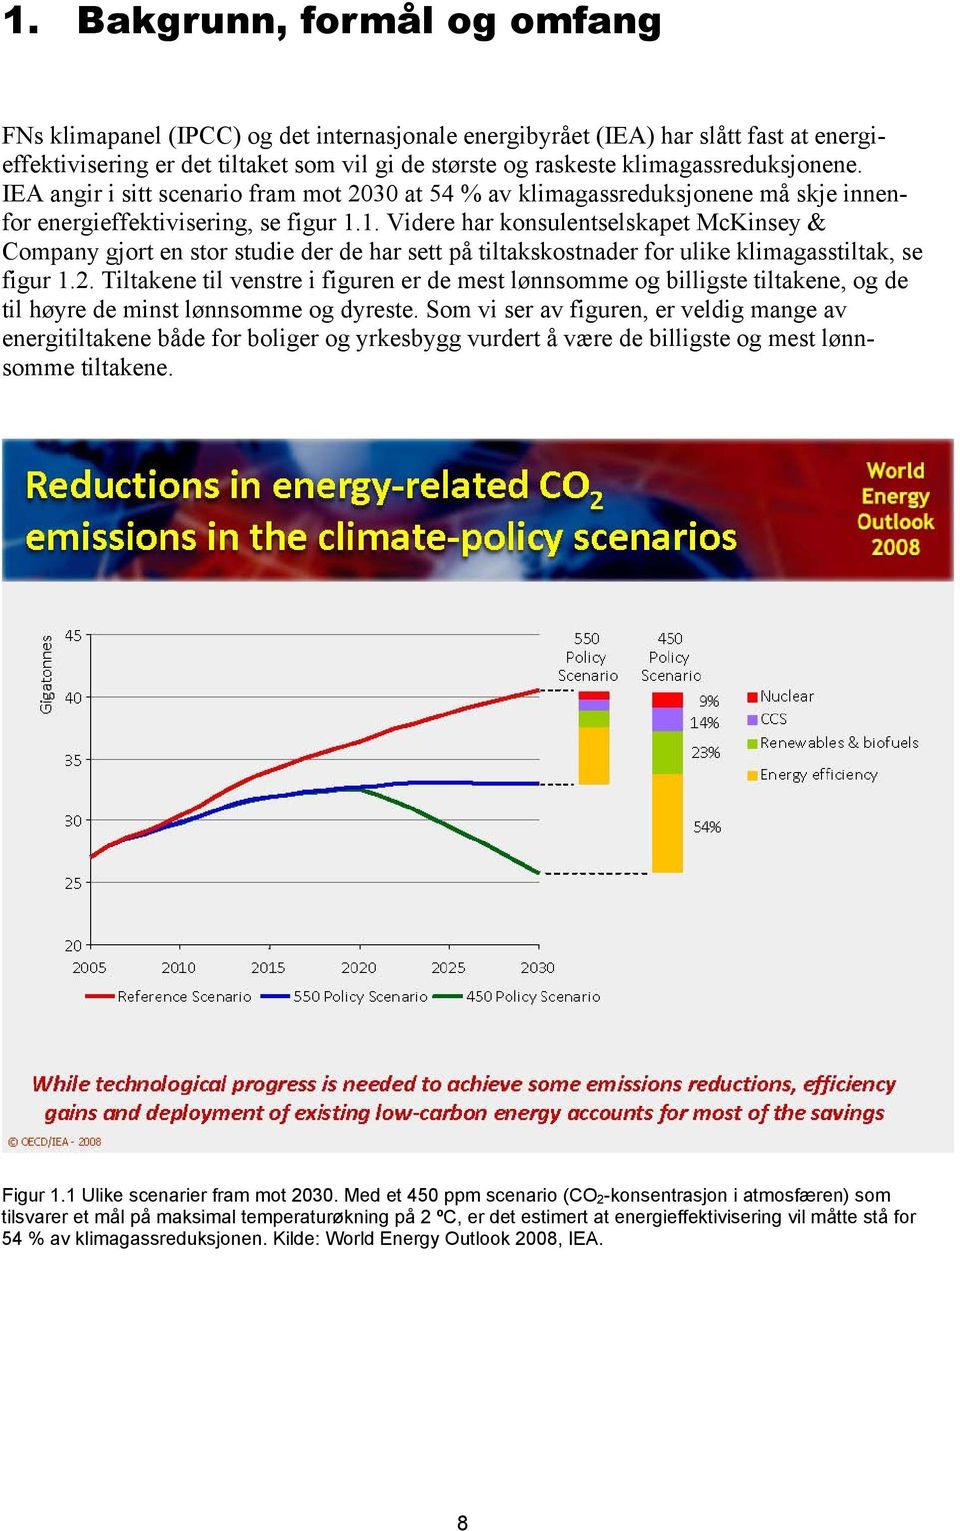 1. Videre har konsulentselskapet McKinsey & Company gjort en stor studie der de har sett på tiltakskostnader for ulike klimagasstiltak, se figur 1.2.